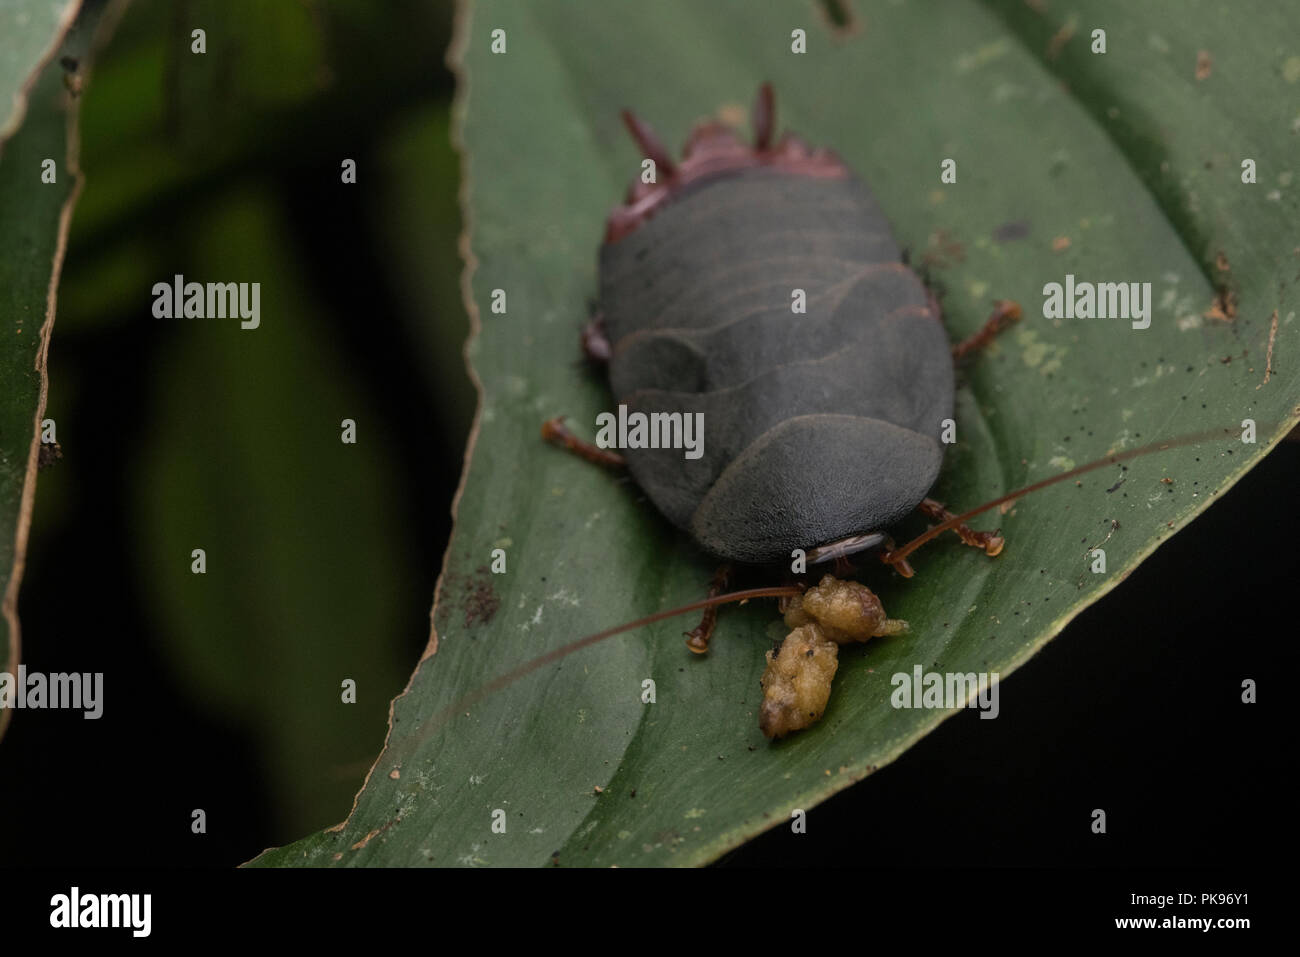 La maggior parte degli scarafaggi vivono lontano da persone come questo uno che vive nel profondo della giungla amazzonica lontano da qualsiasi uomo. Foto Stock